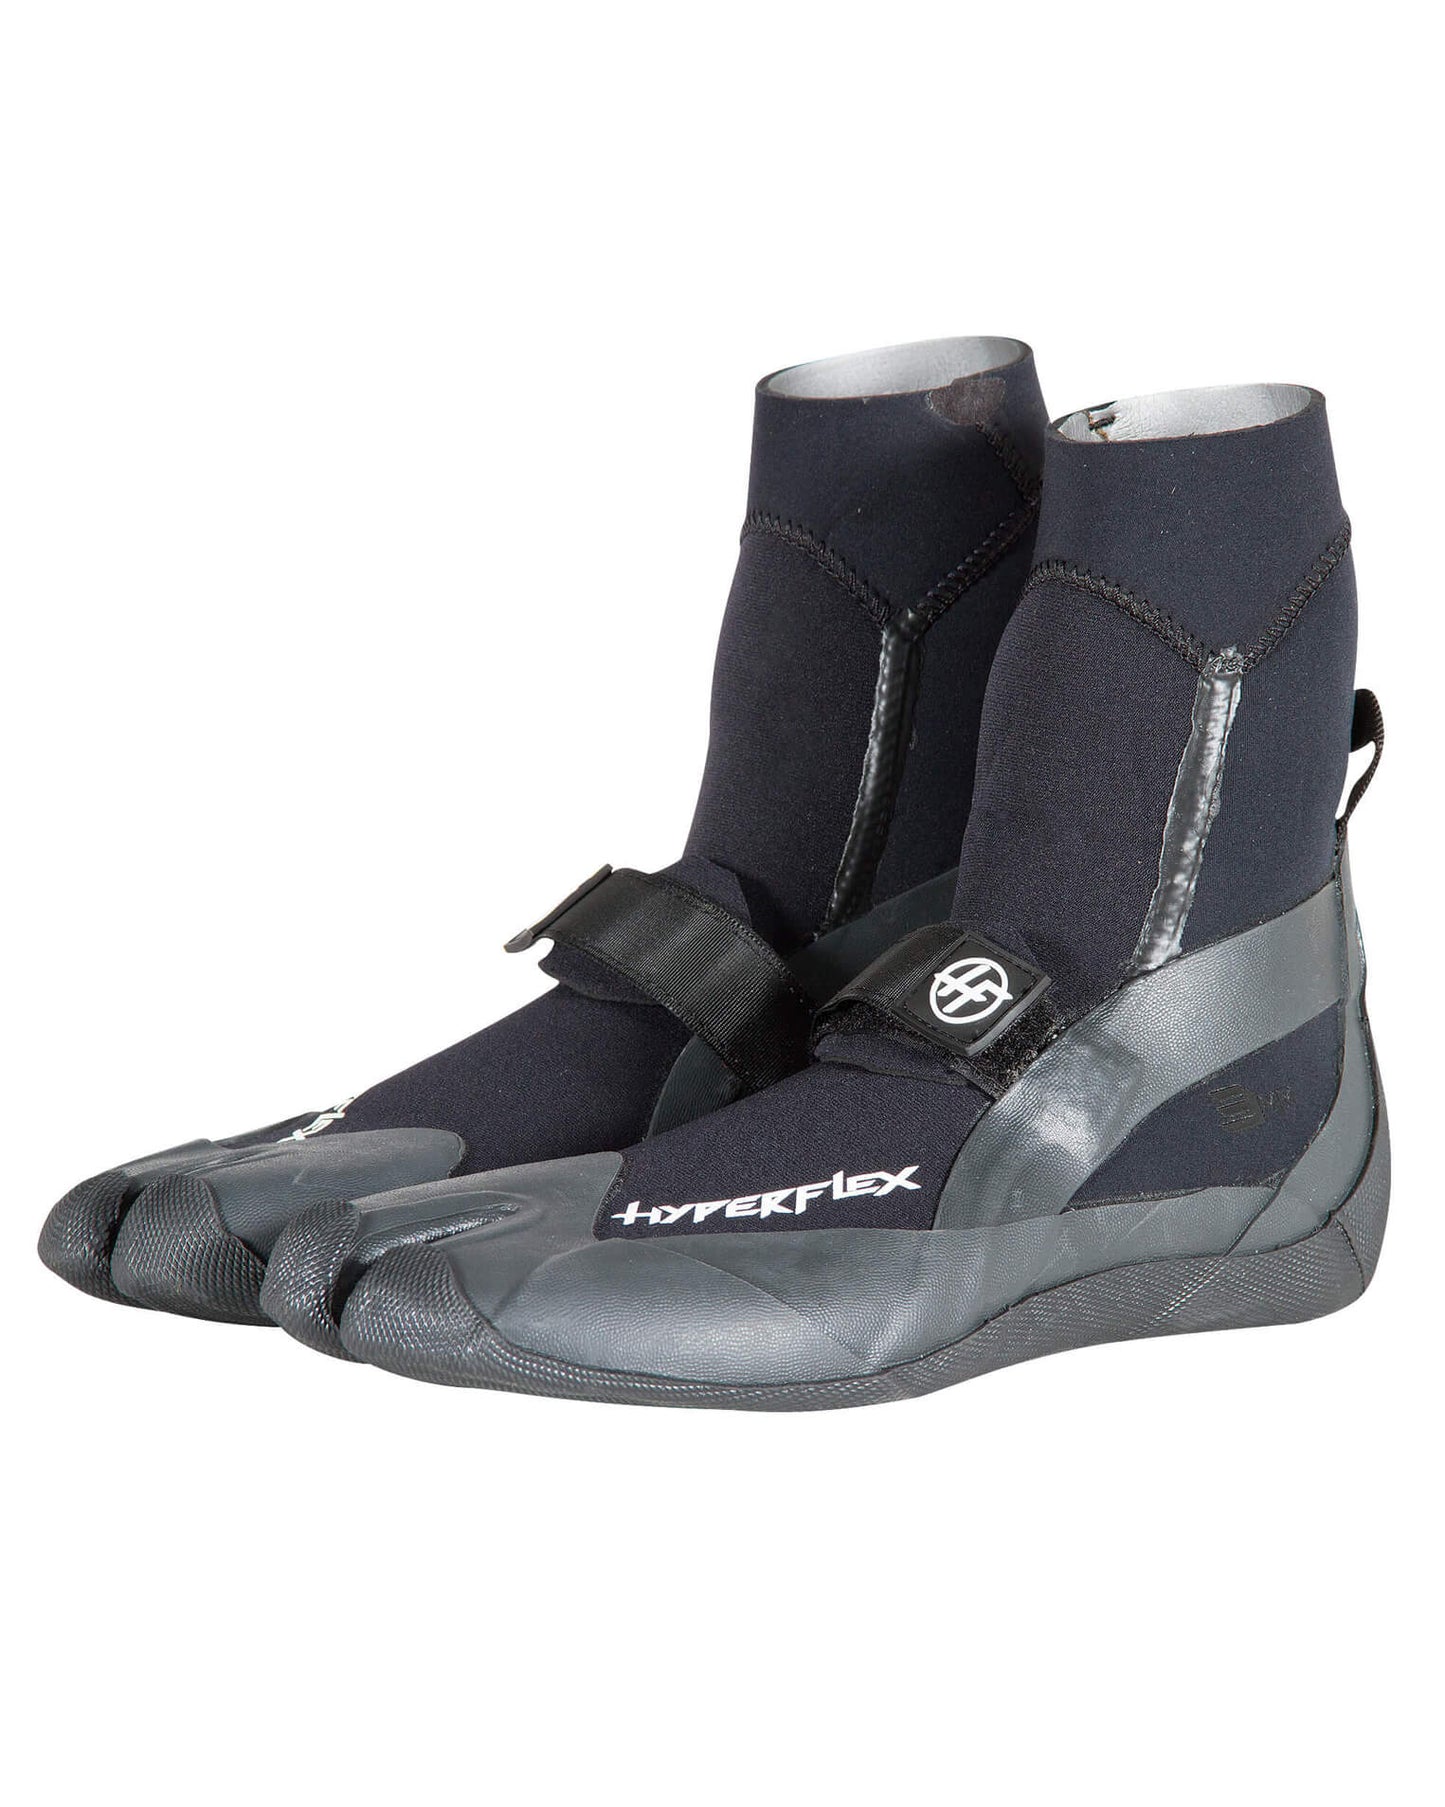 3mm HyperFlex PRO Split Toe Wetsuit Boots